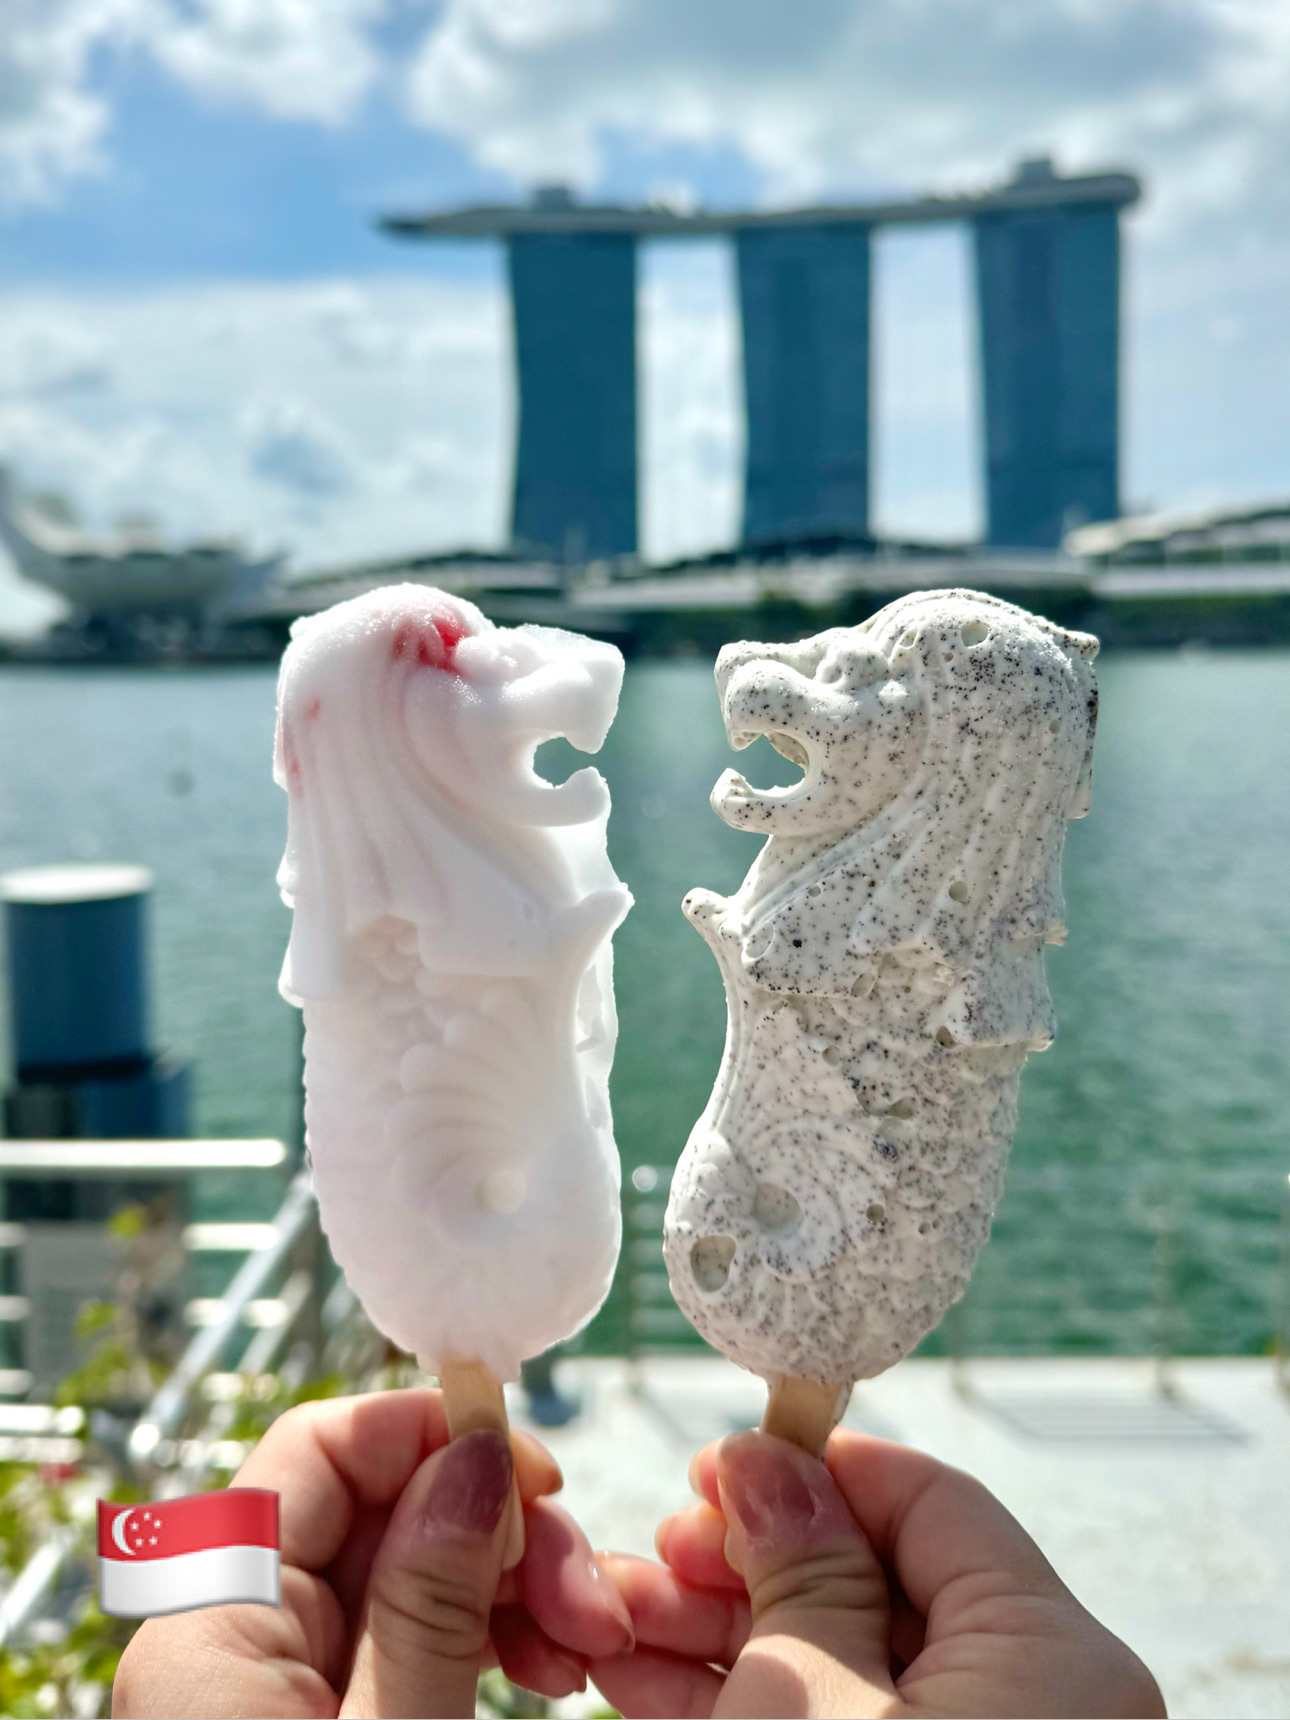 【新加坡】照片一定会很棒!如果你去,你想吃鱼尾狮冰棍